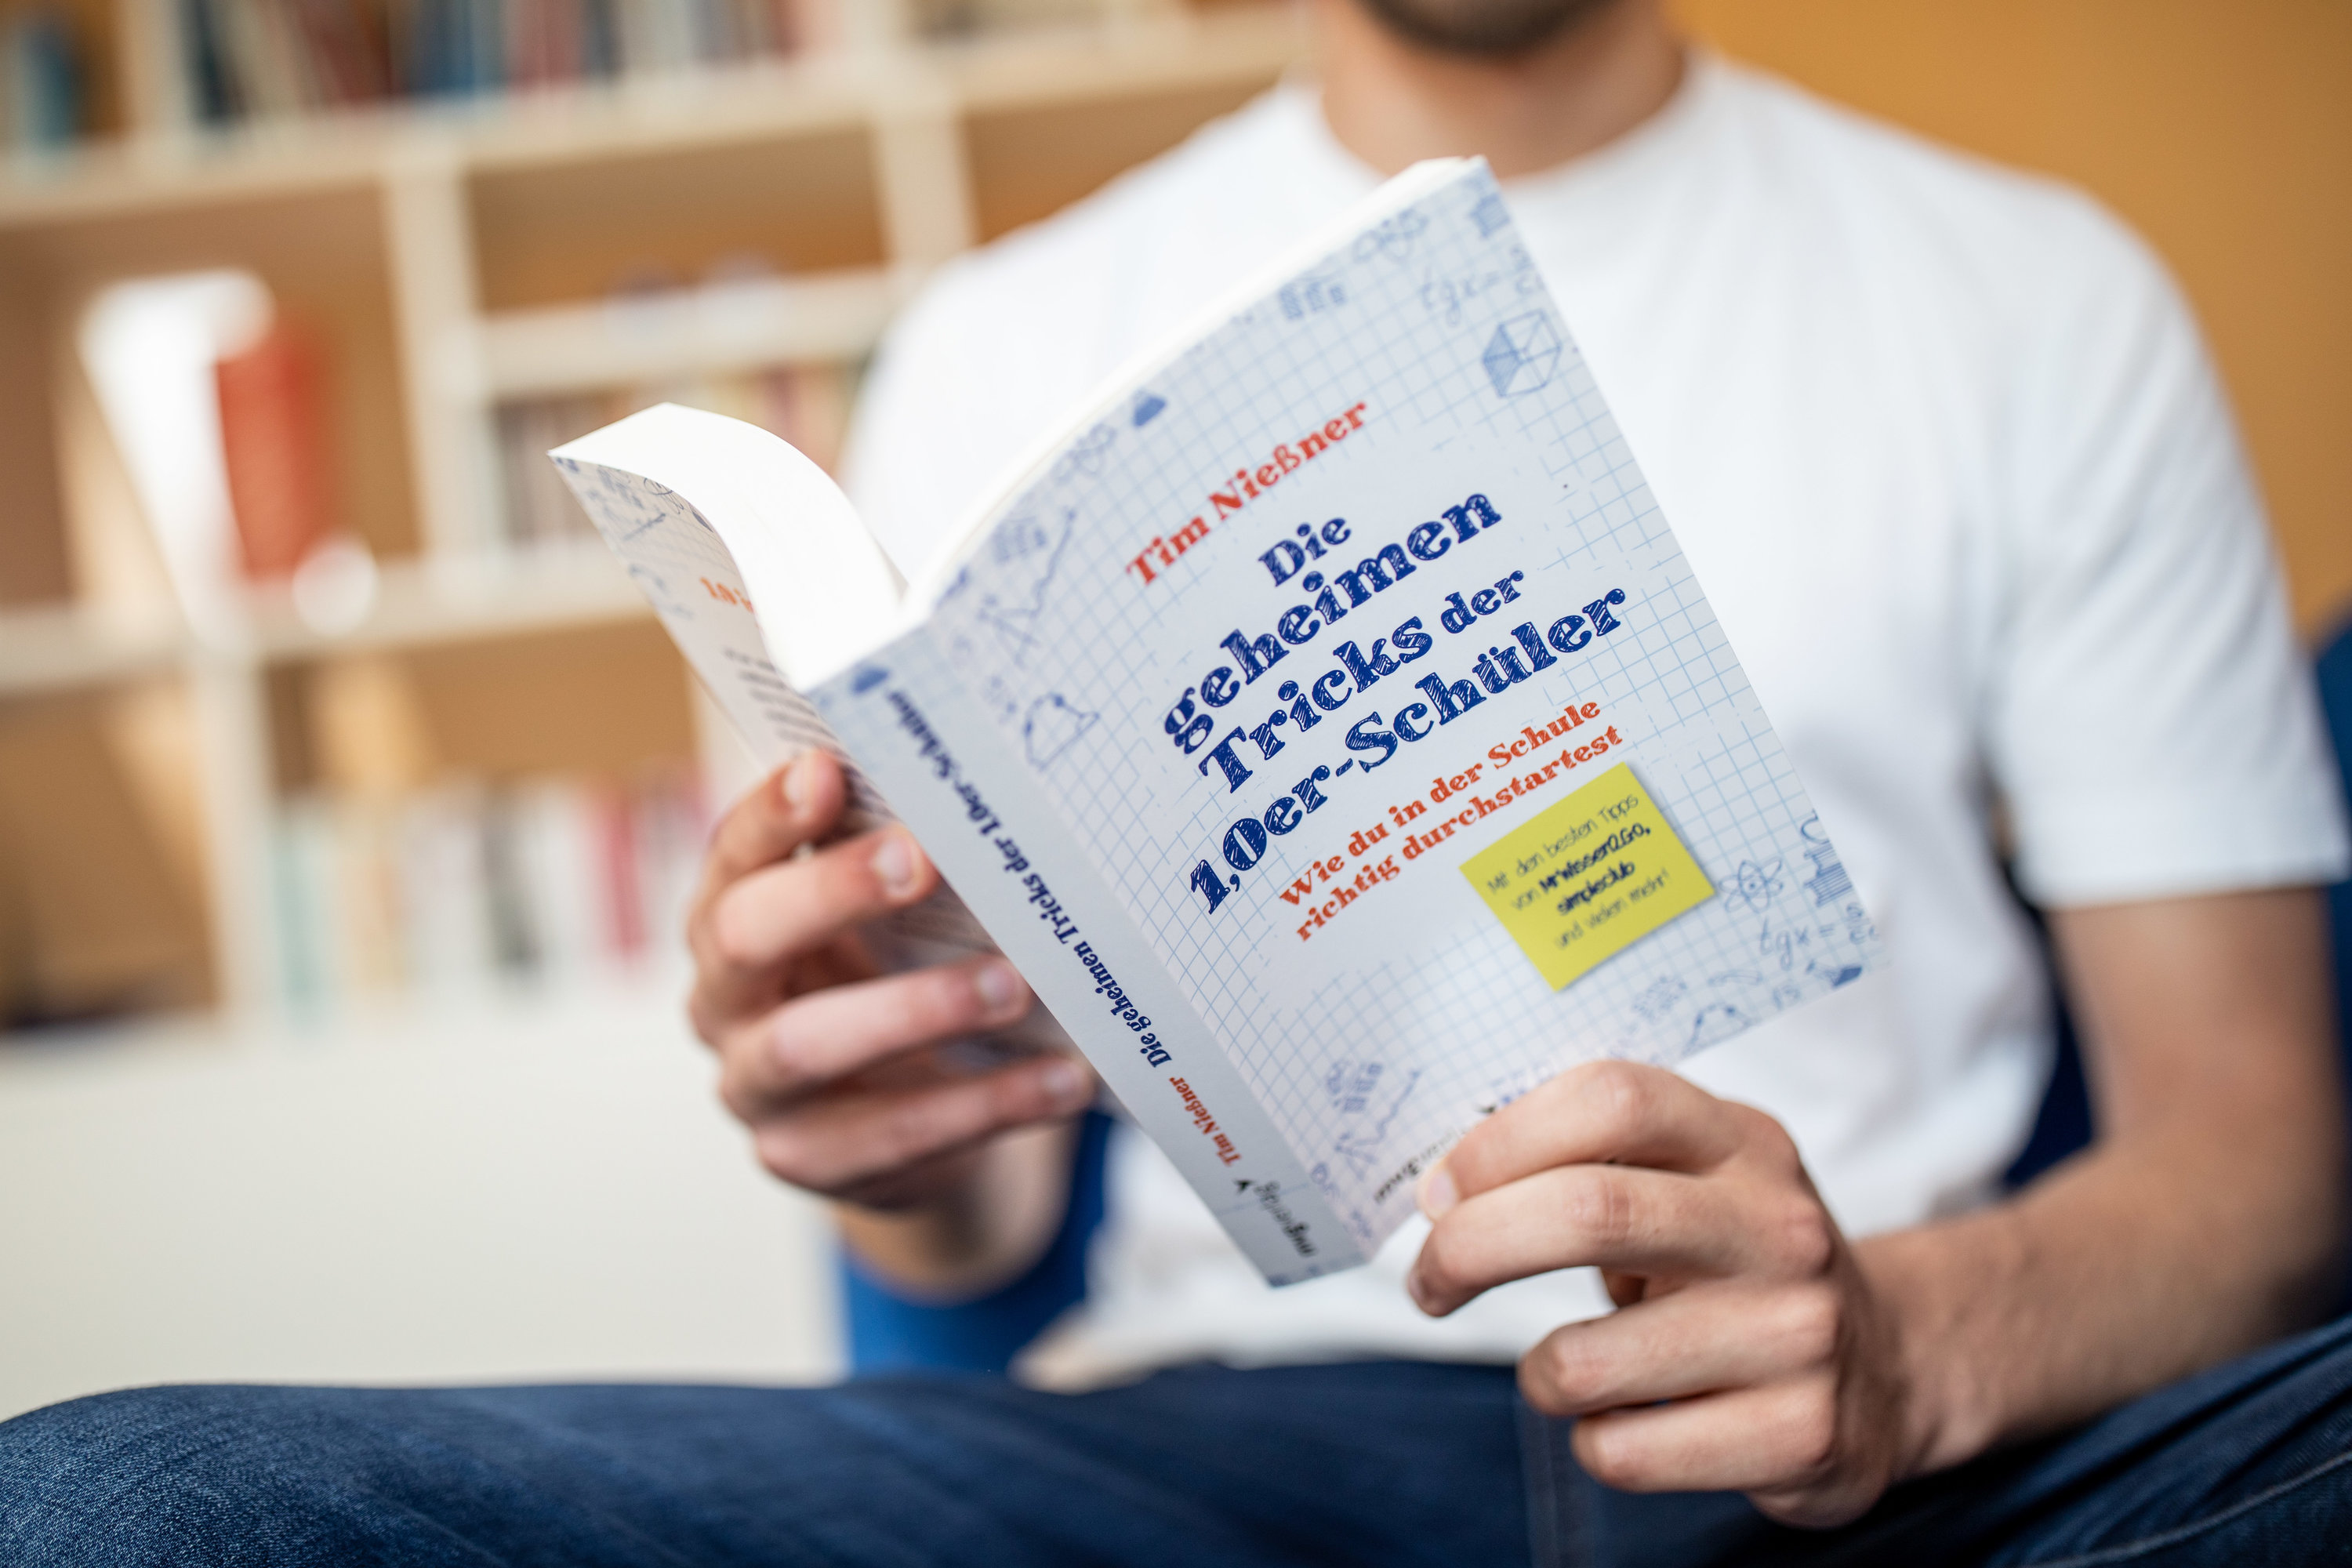 Alle Tricks, zusammengefasst in einem Buch: Tim Nießner glaubt, jeder Schüler könne ein Abitur mit einem Einserschnitt schaffen. Foto: dpa / Kusch